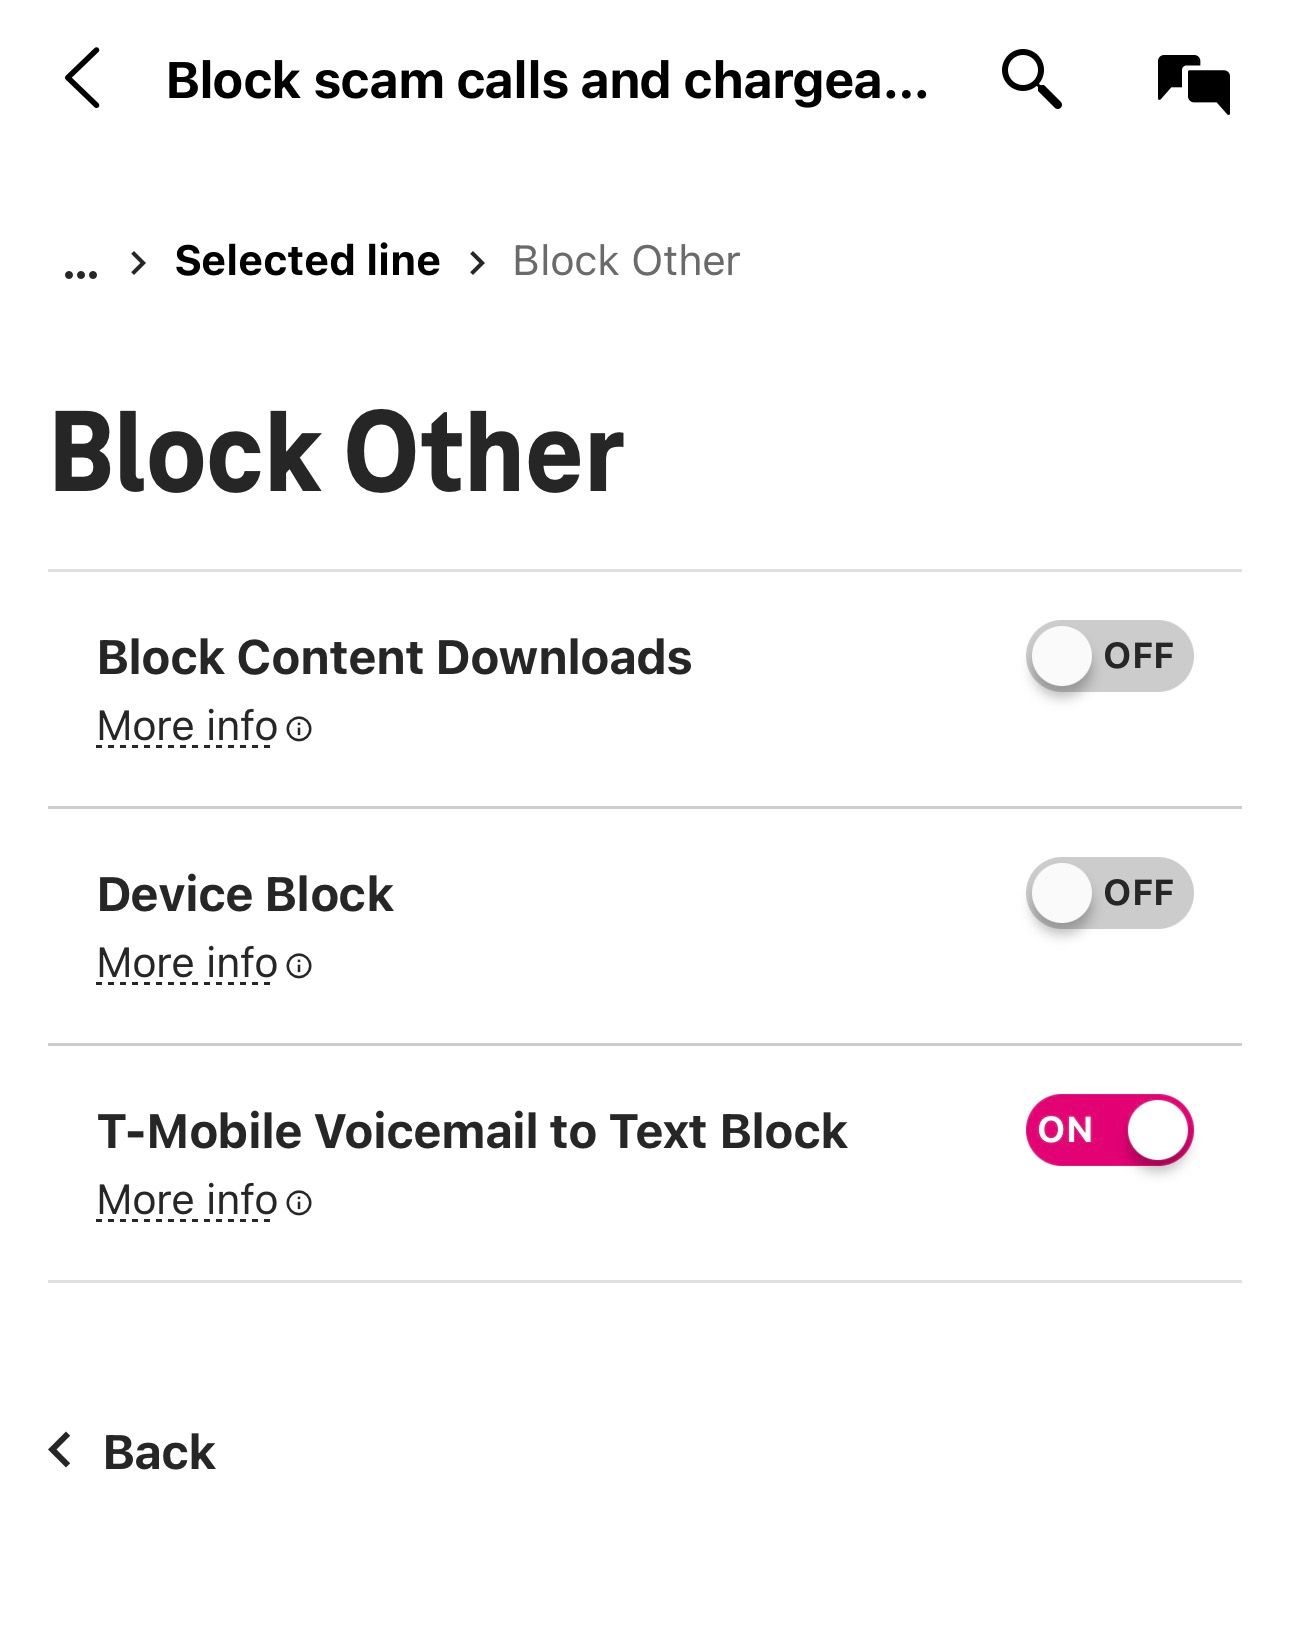 Escolha a opção de bloqueio do correio de voz da T-Mobil para menu de texto.